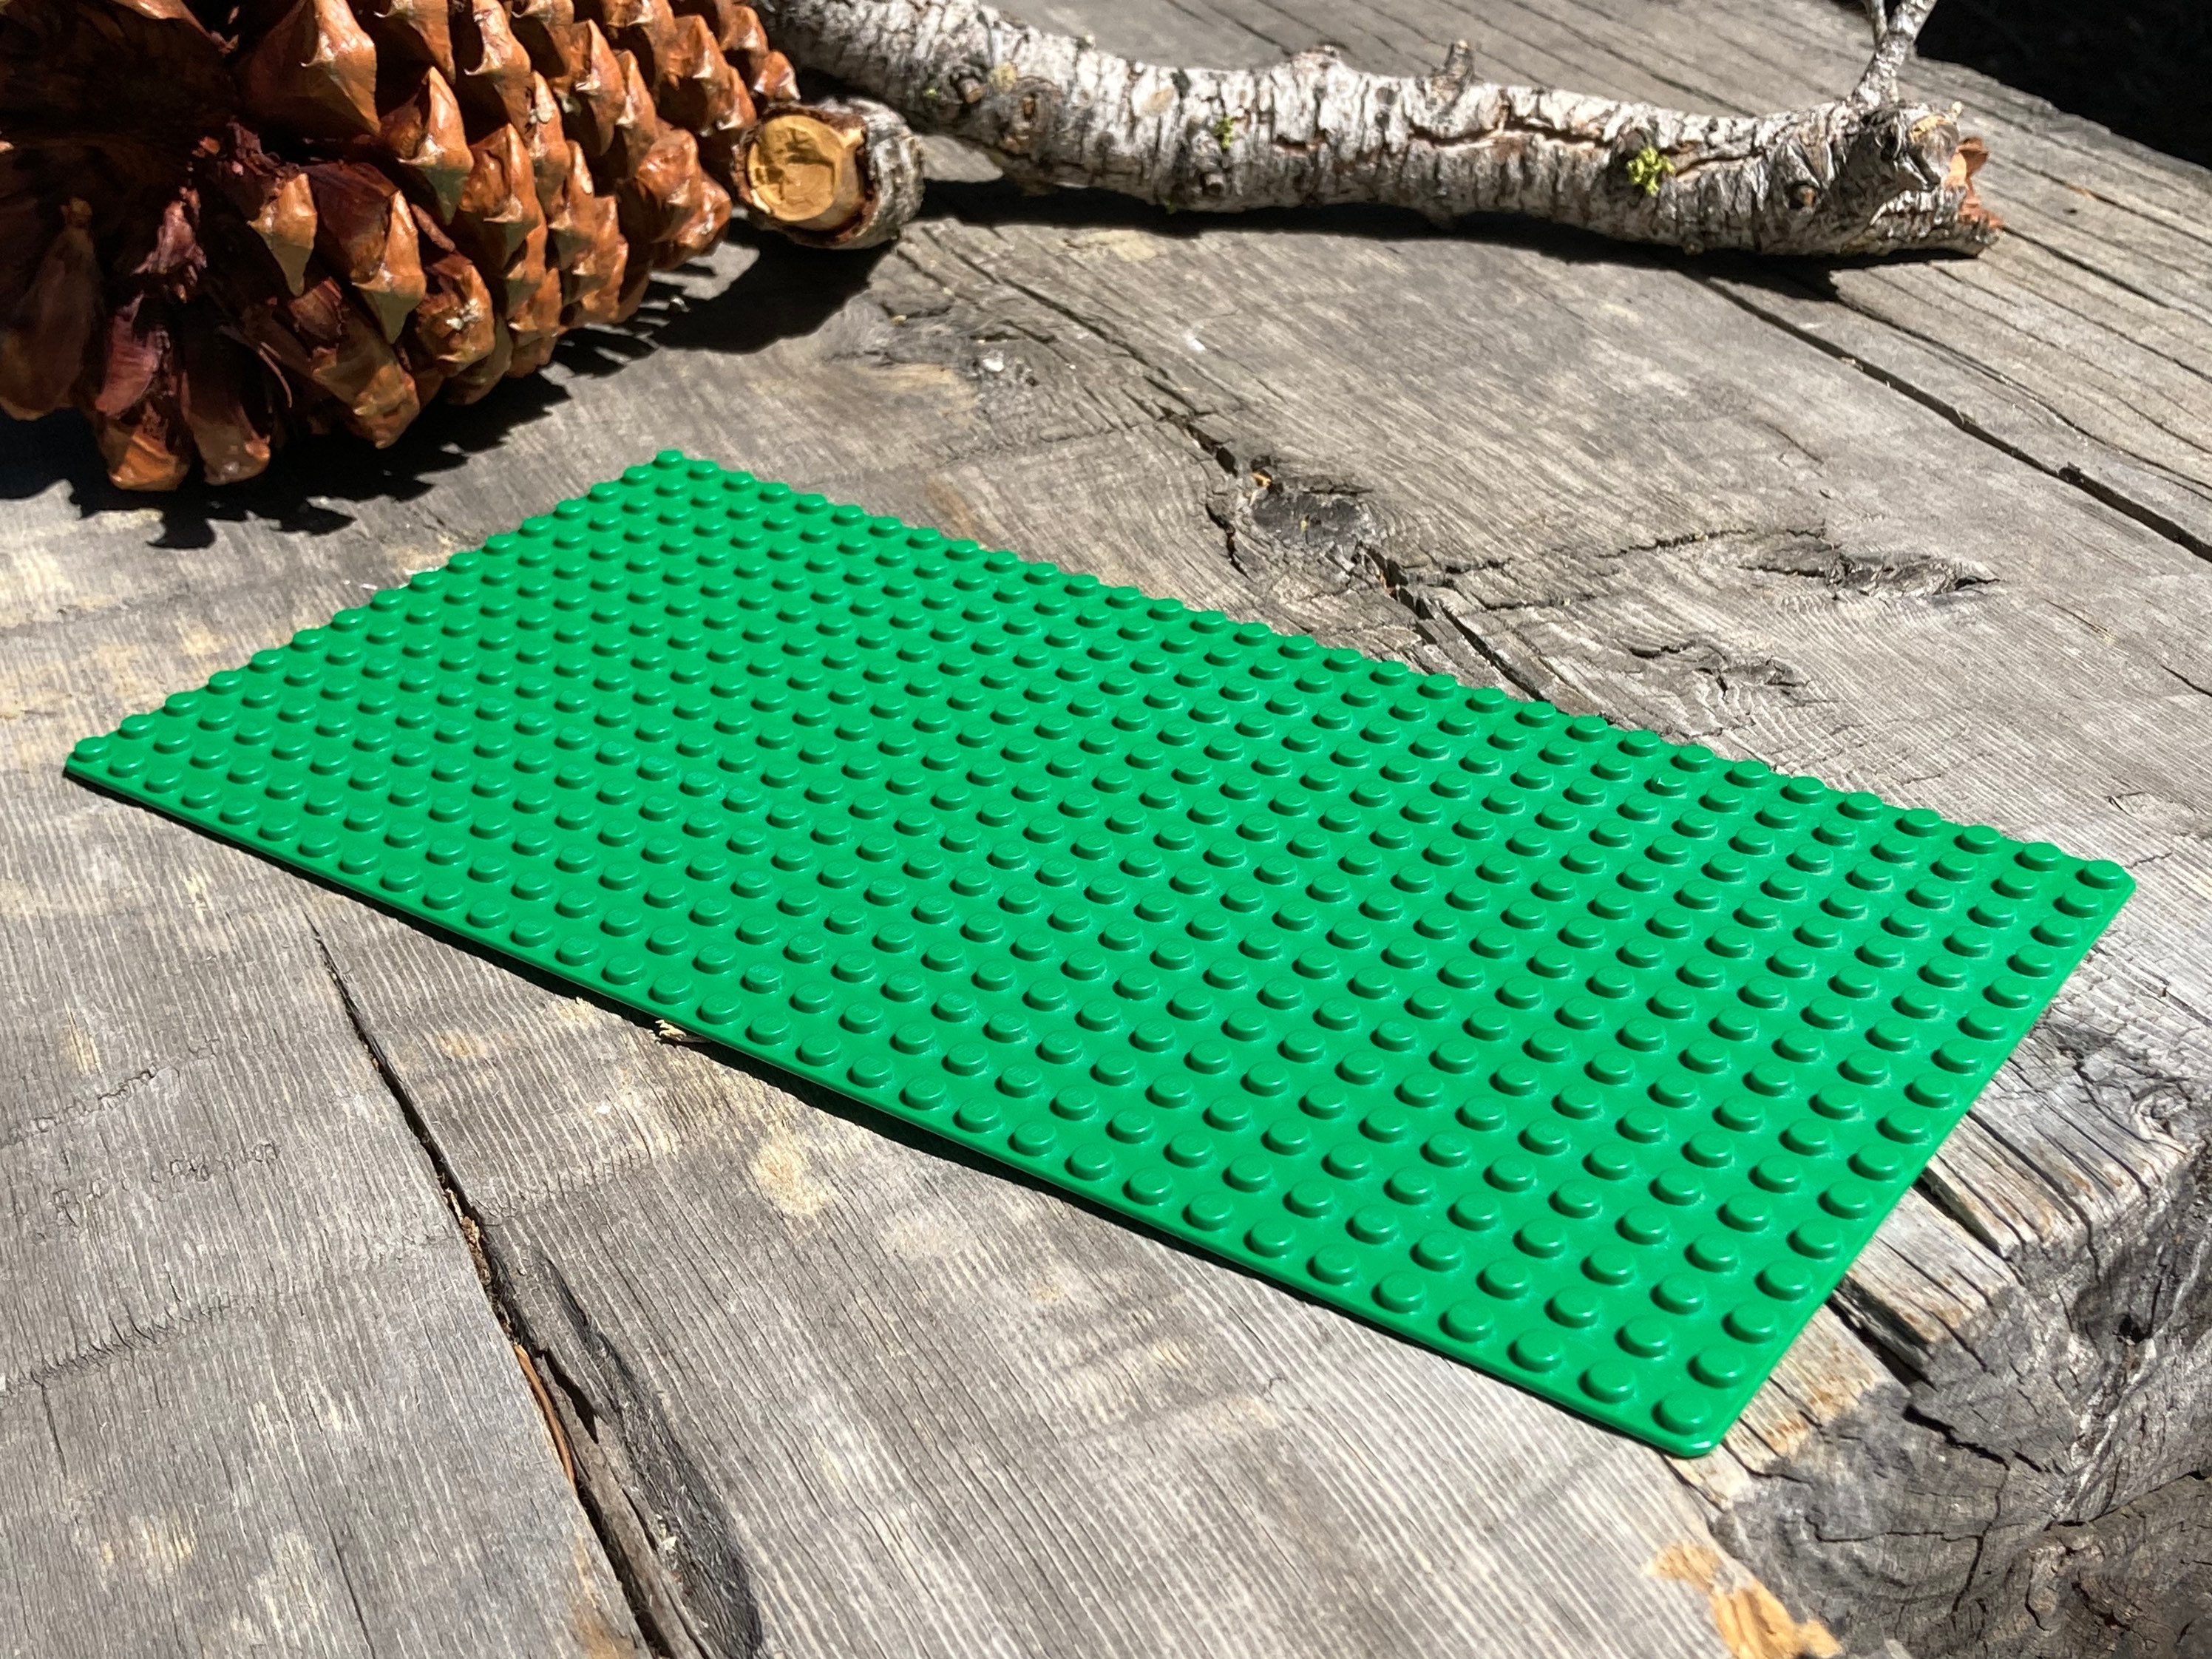 Plaque de base 16 x 32 à vous de choisir 100 % authentique LEGO